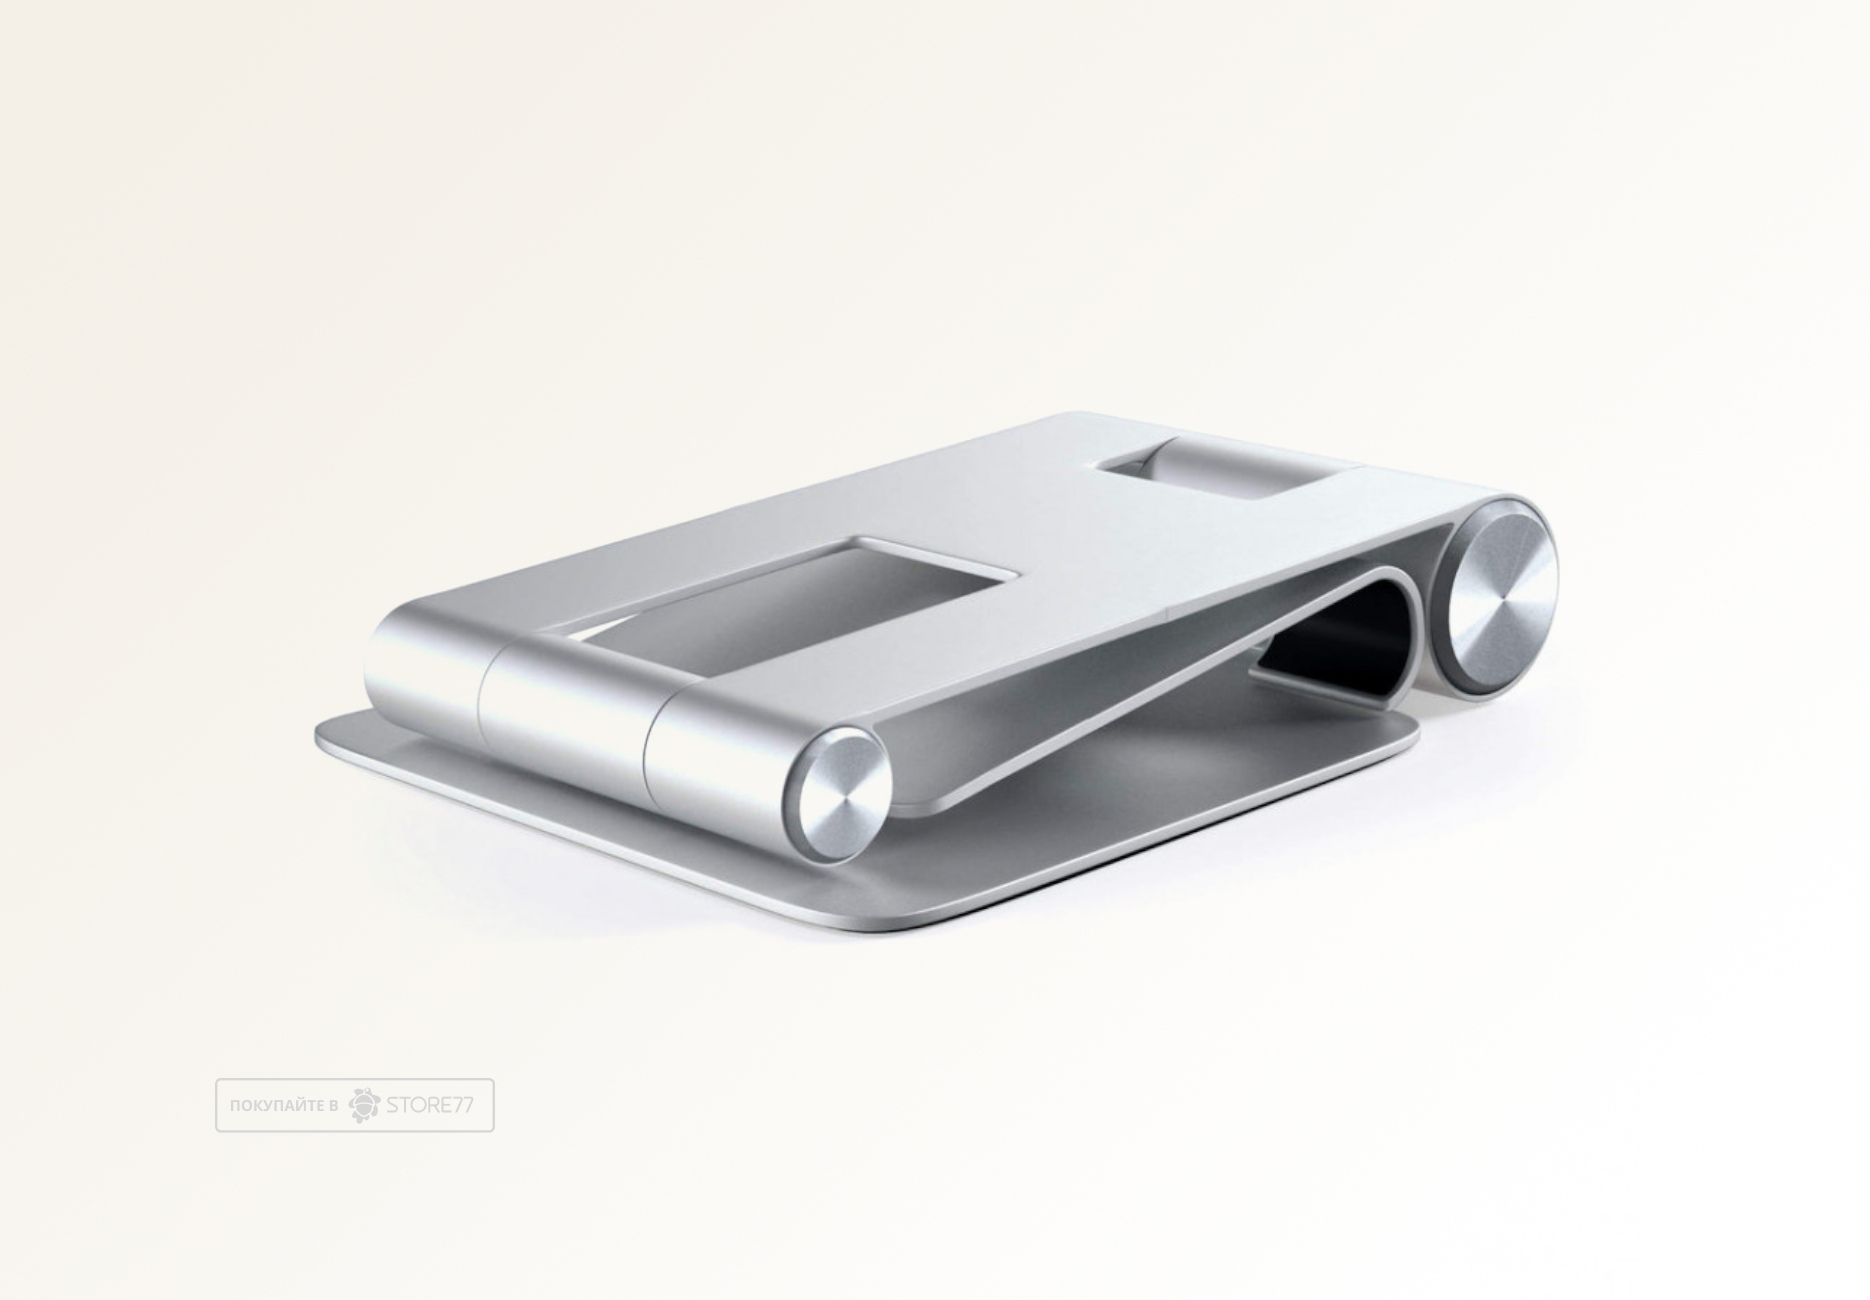 Настольная подставка Satechi R1 Aluminum Multi-Angle Tablet Stand для мобильных устройств.Материал алюминий (Серебряный)